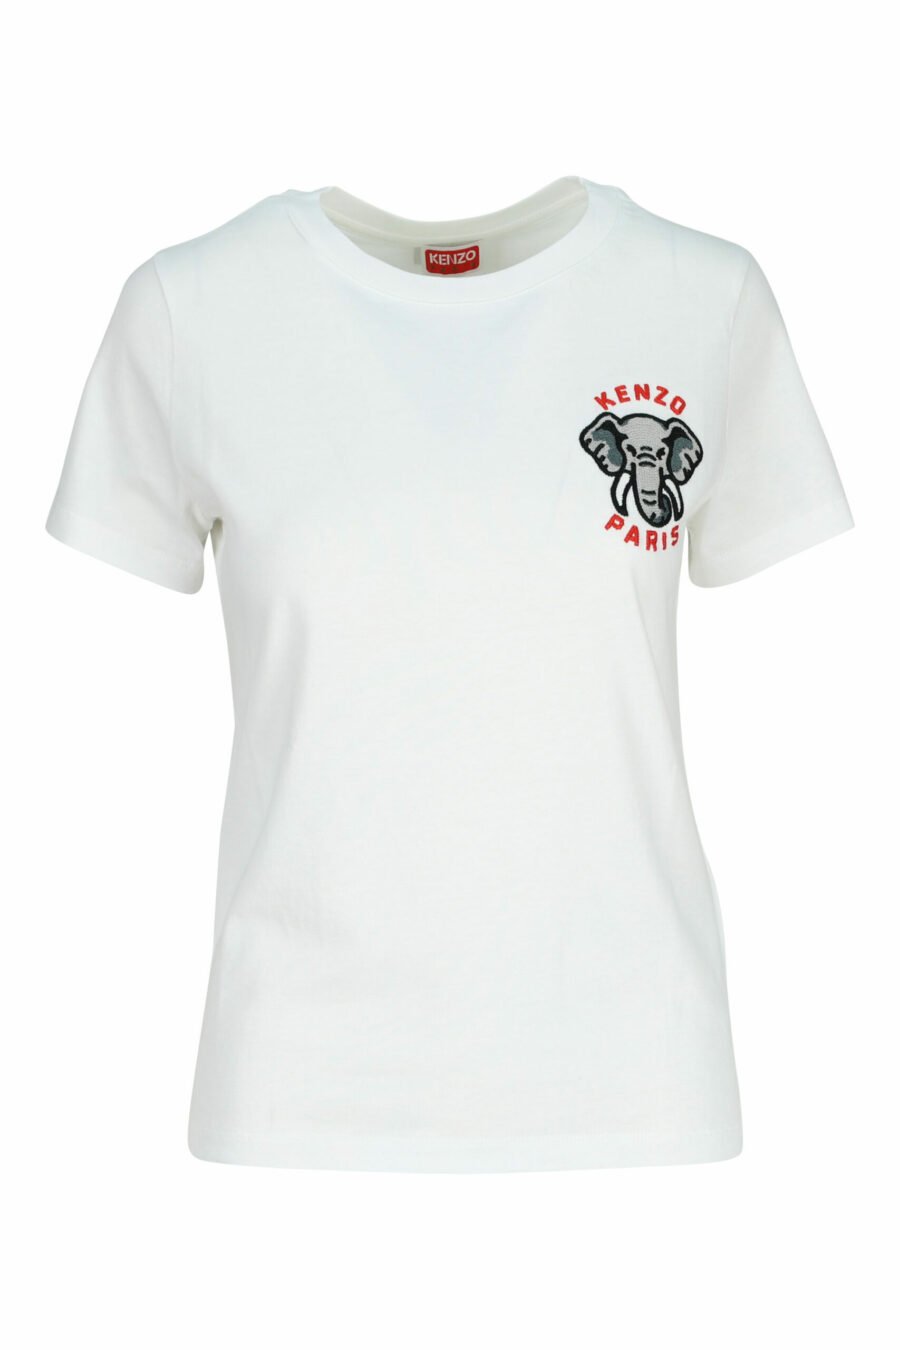 Weißes T-Shirt mit Mini-Logo "kenzo elephant" - 3612230620117 skaliert